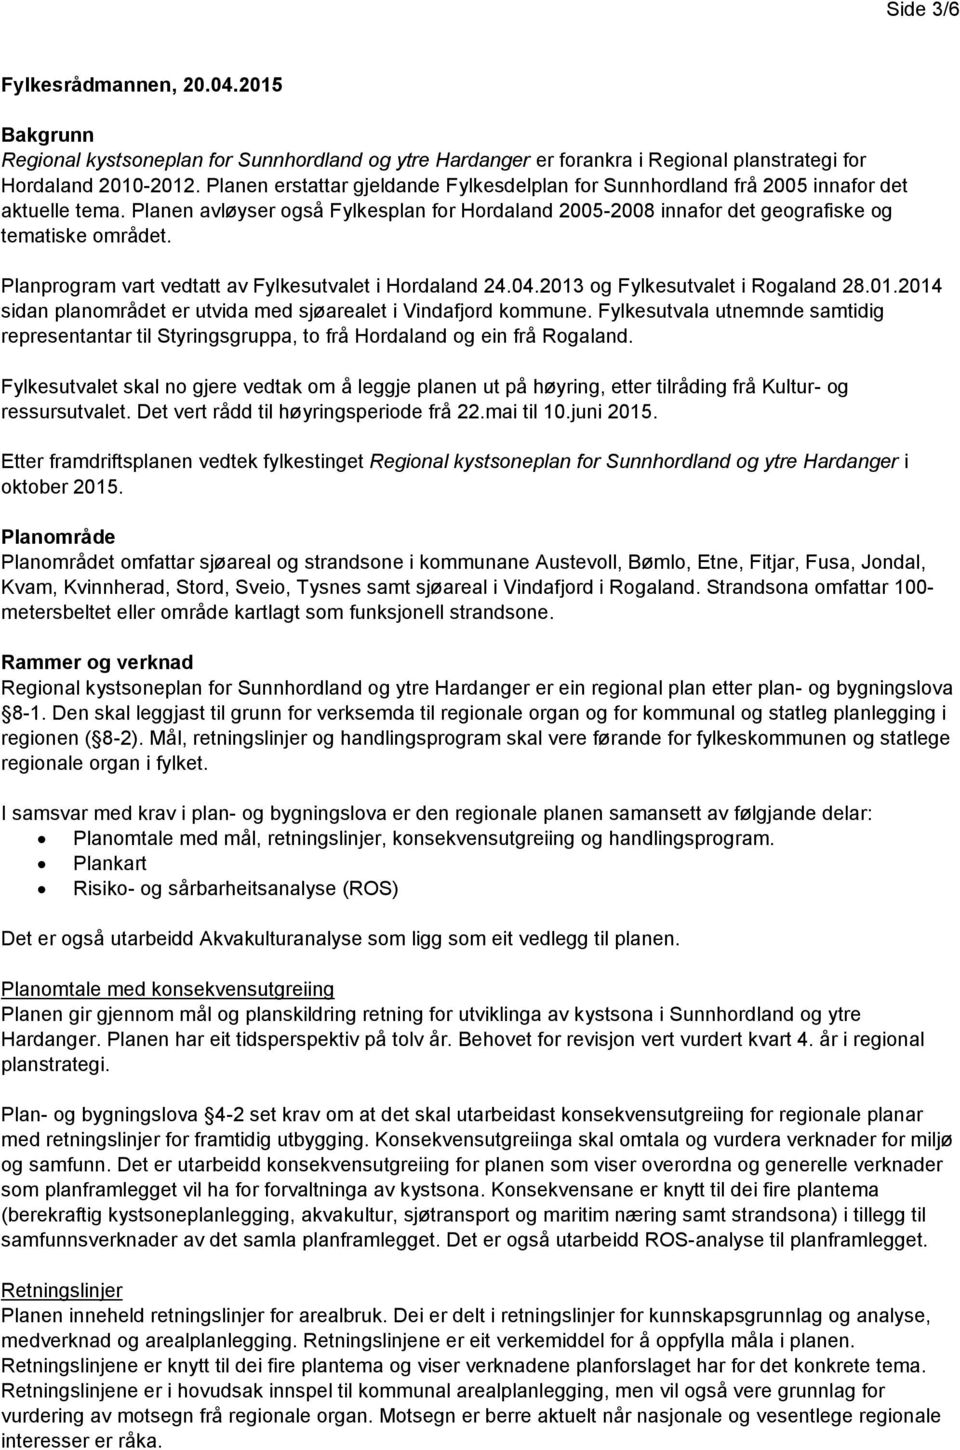 Planprogram vart vedtatt av Fylkesutvalet i Hordaland 24.04.2013 og Fylkesutvalet i Rogaland 28.01.2014 sidan planområdet er utvida med sjøarealet i Vindafjord kommune.